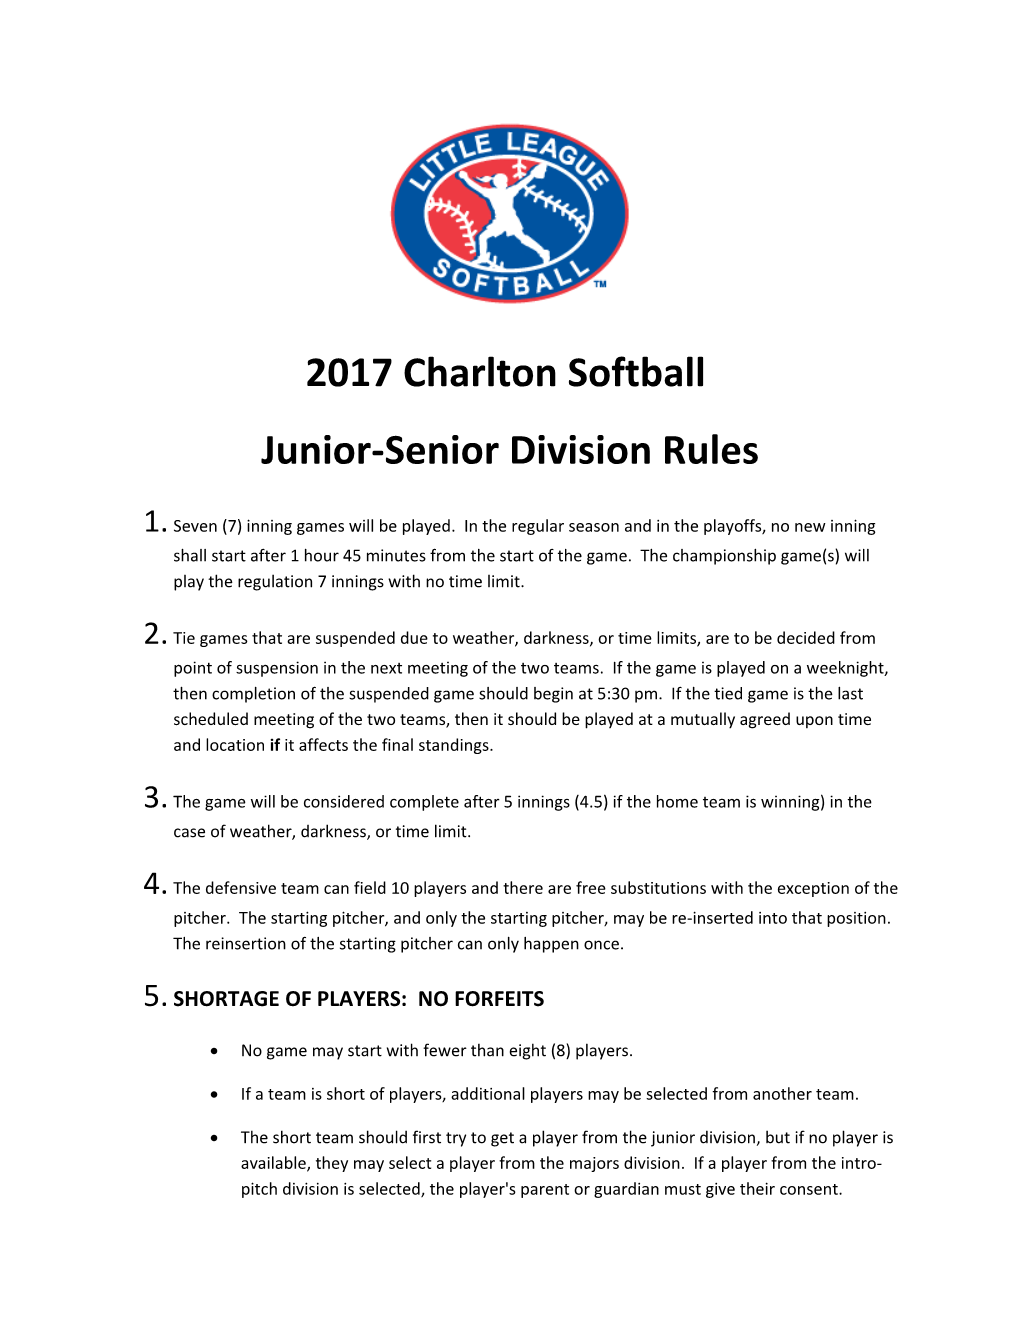 Junior-Senior Division Rules